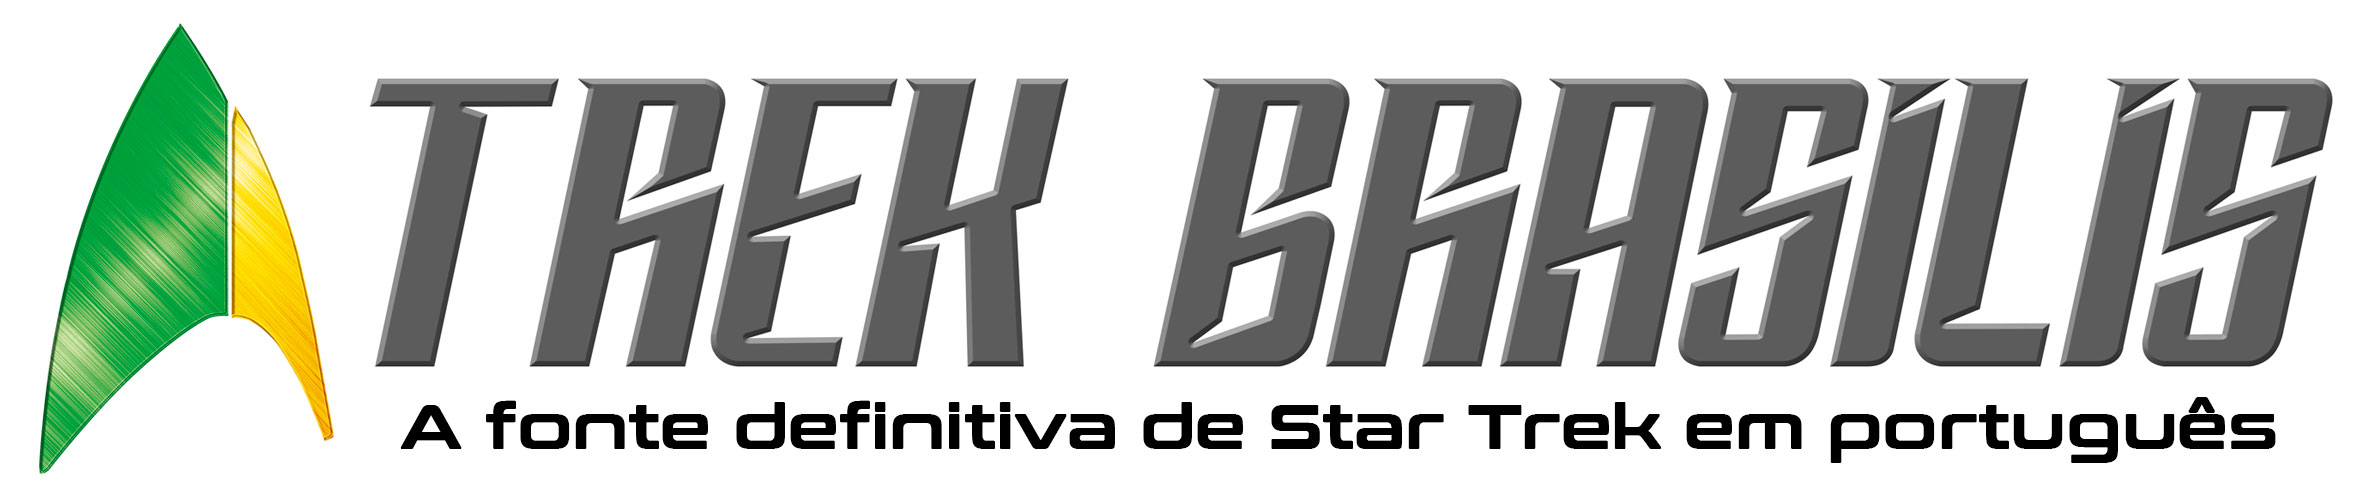 Trek Brasilis - A fonte definitiva de Star Trek (Jornada nas Estrelas) em português